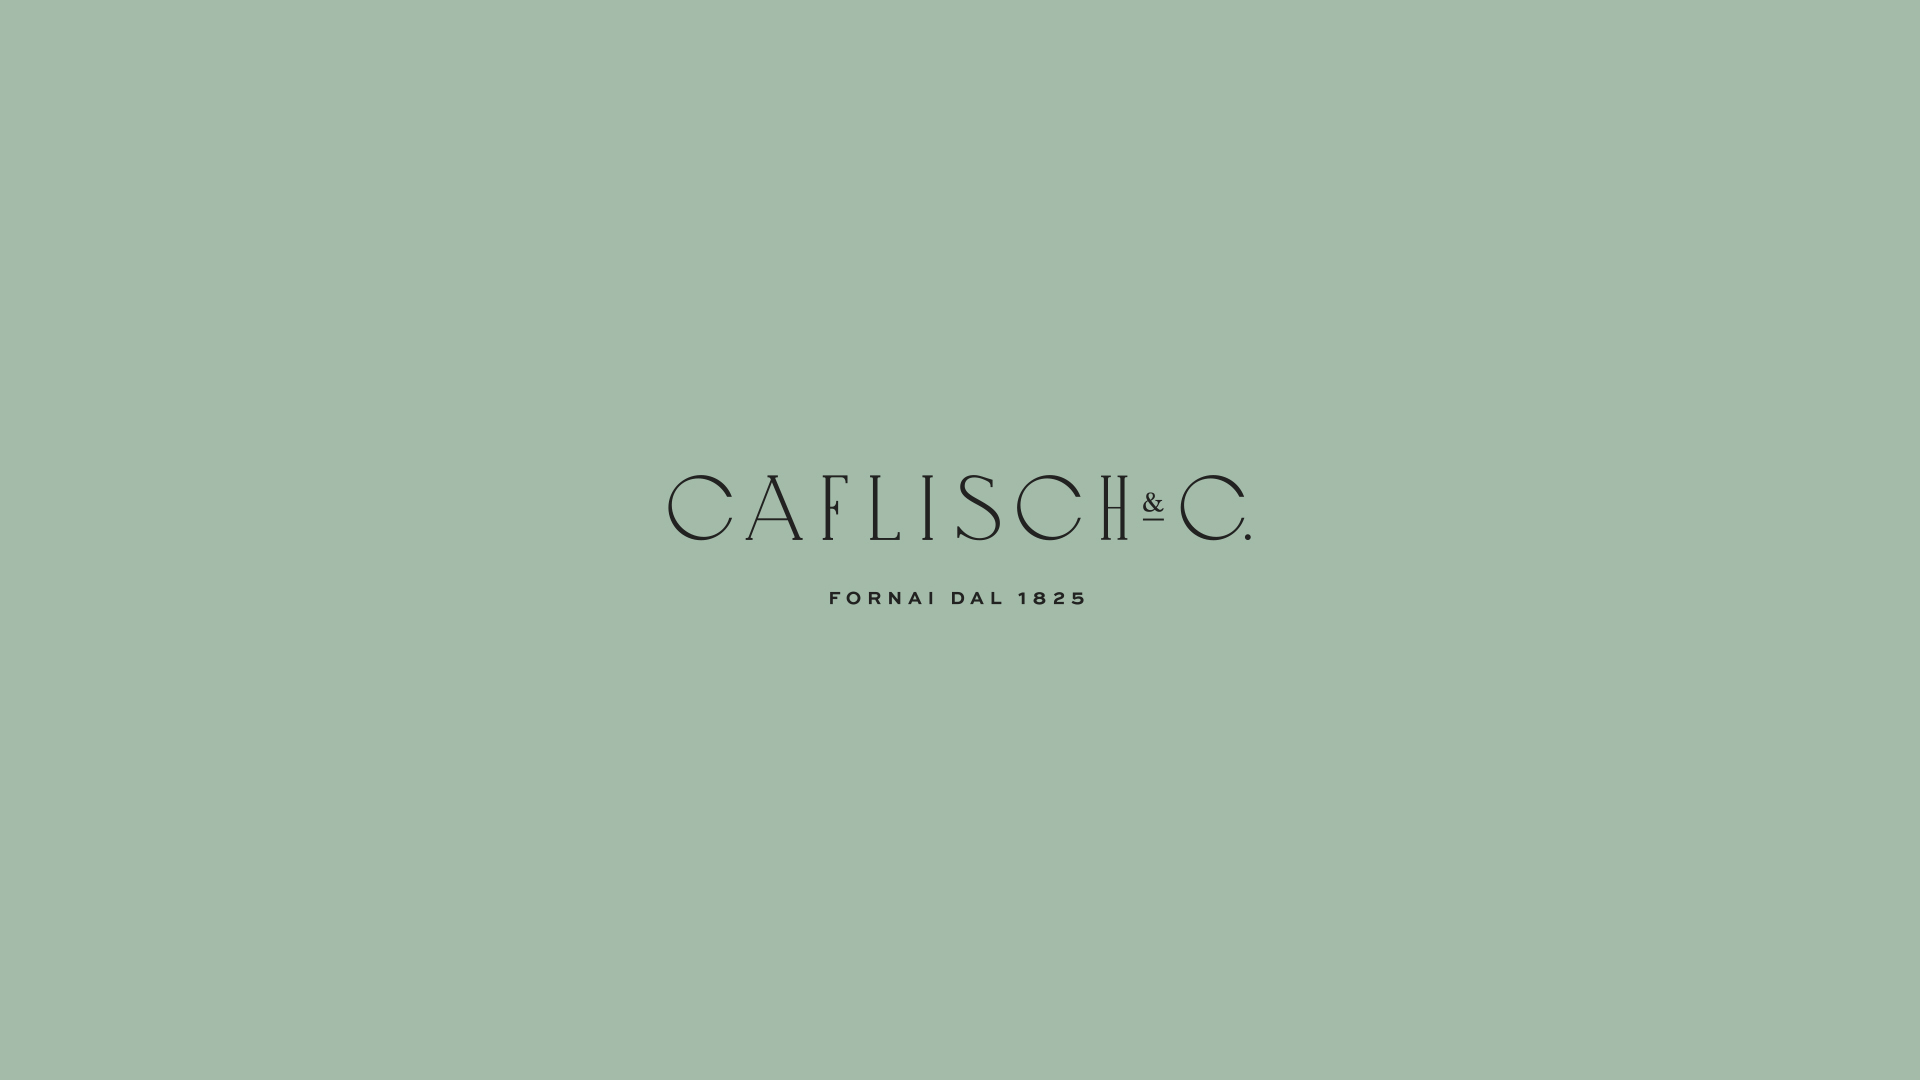 Caflisch & Co